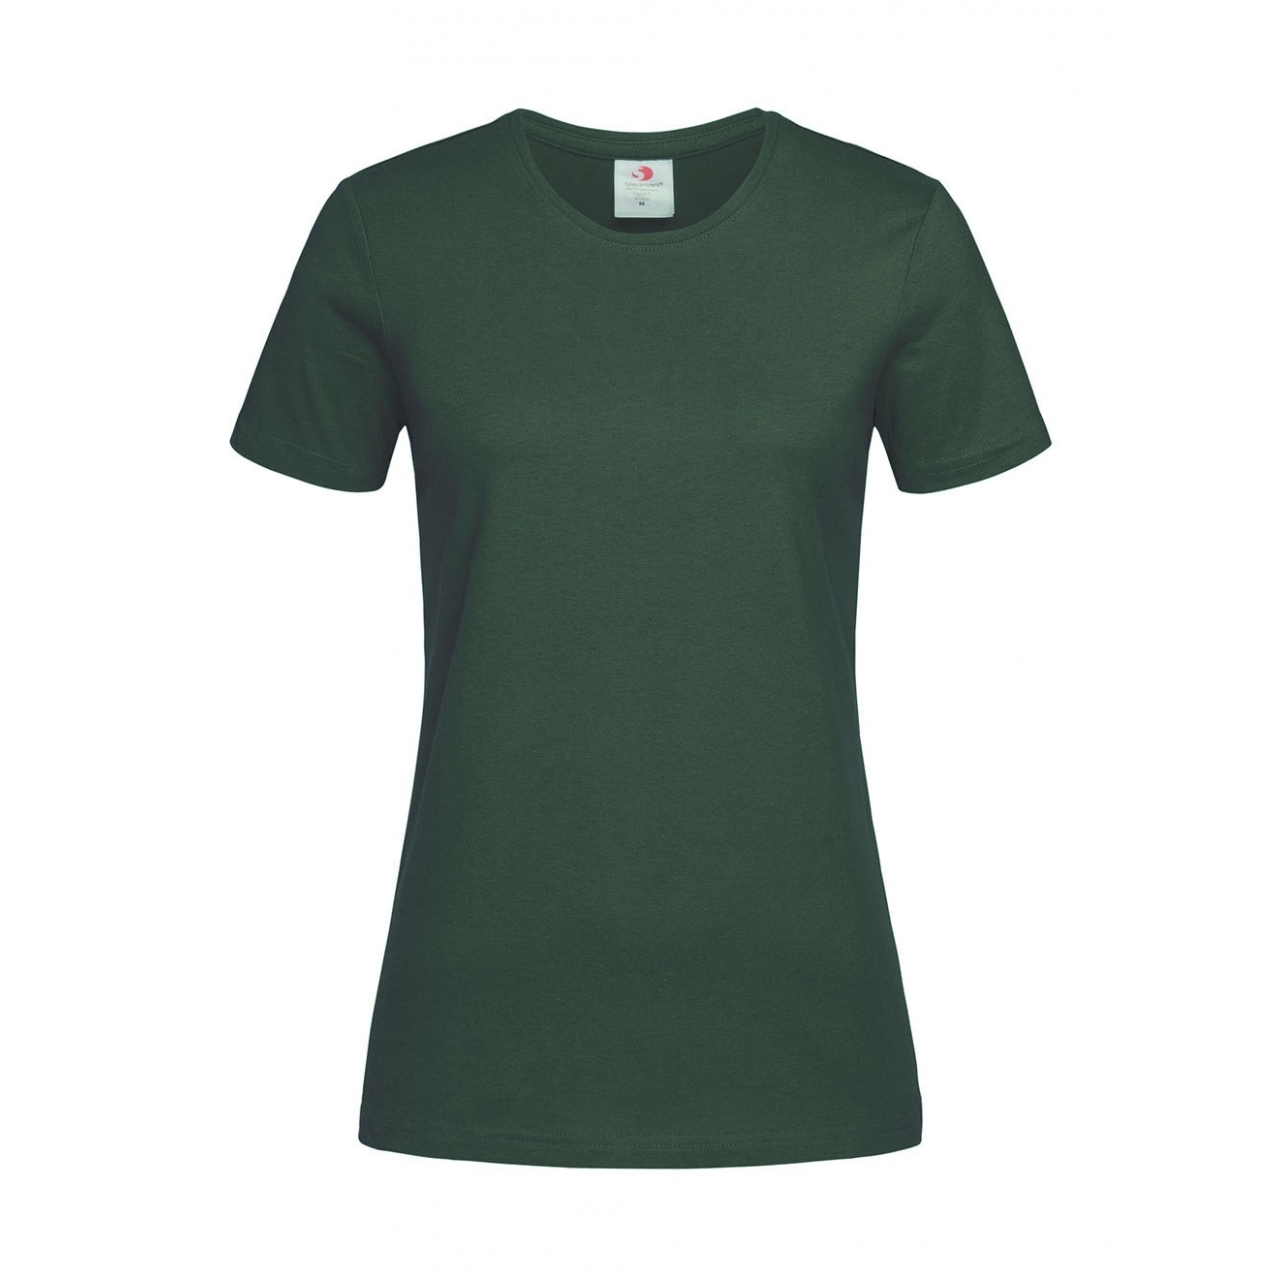 Tričko dámské Stedman Fitted s kulatým výstřihem - tmavě zelené, L